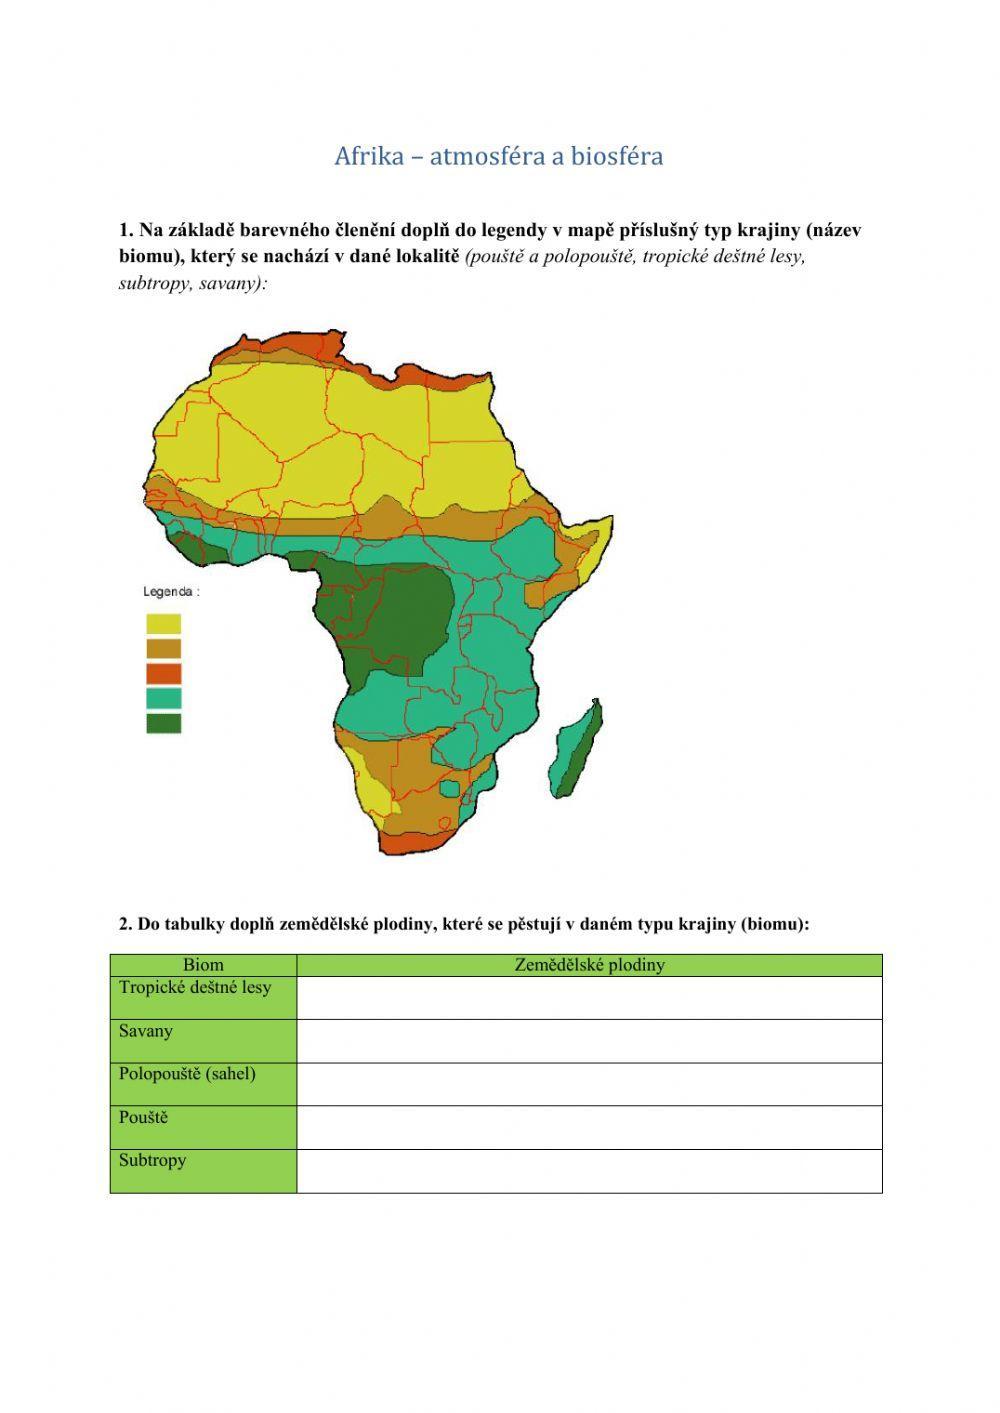 Afrika - atmosféra a biosféra